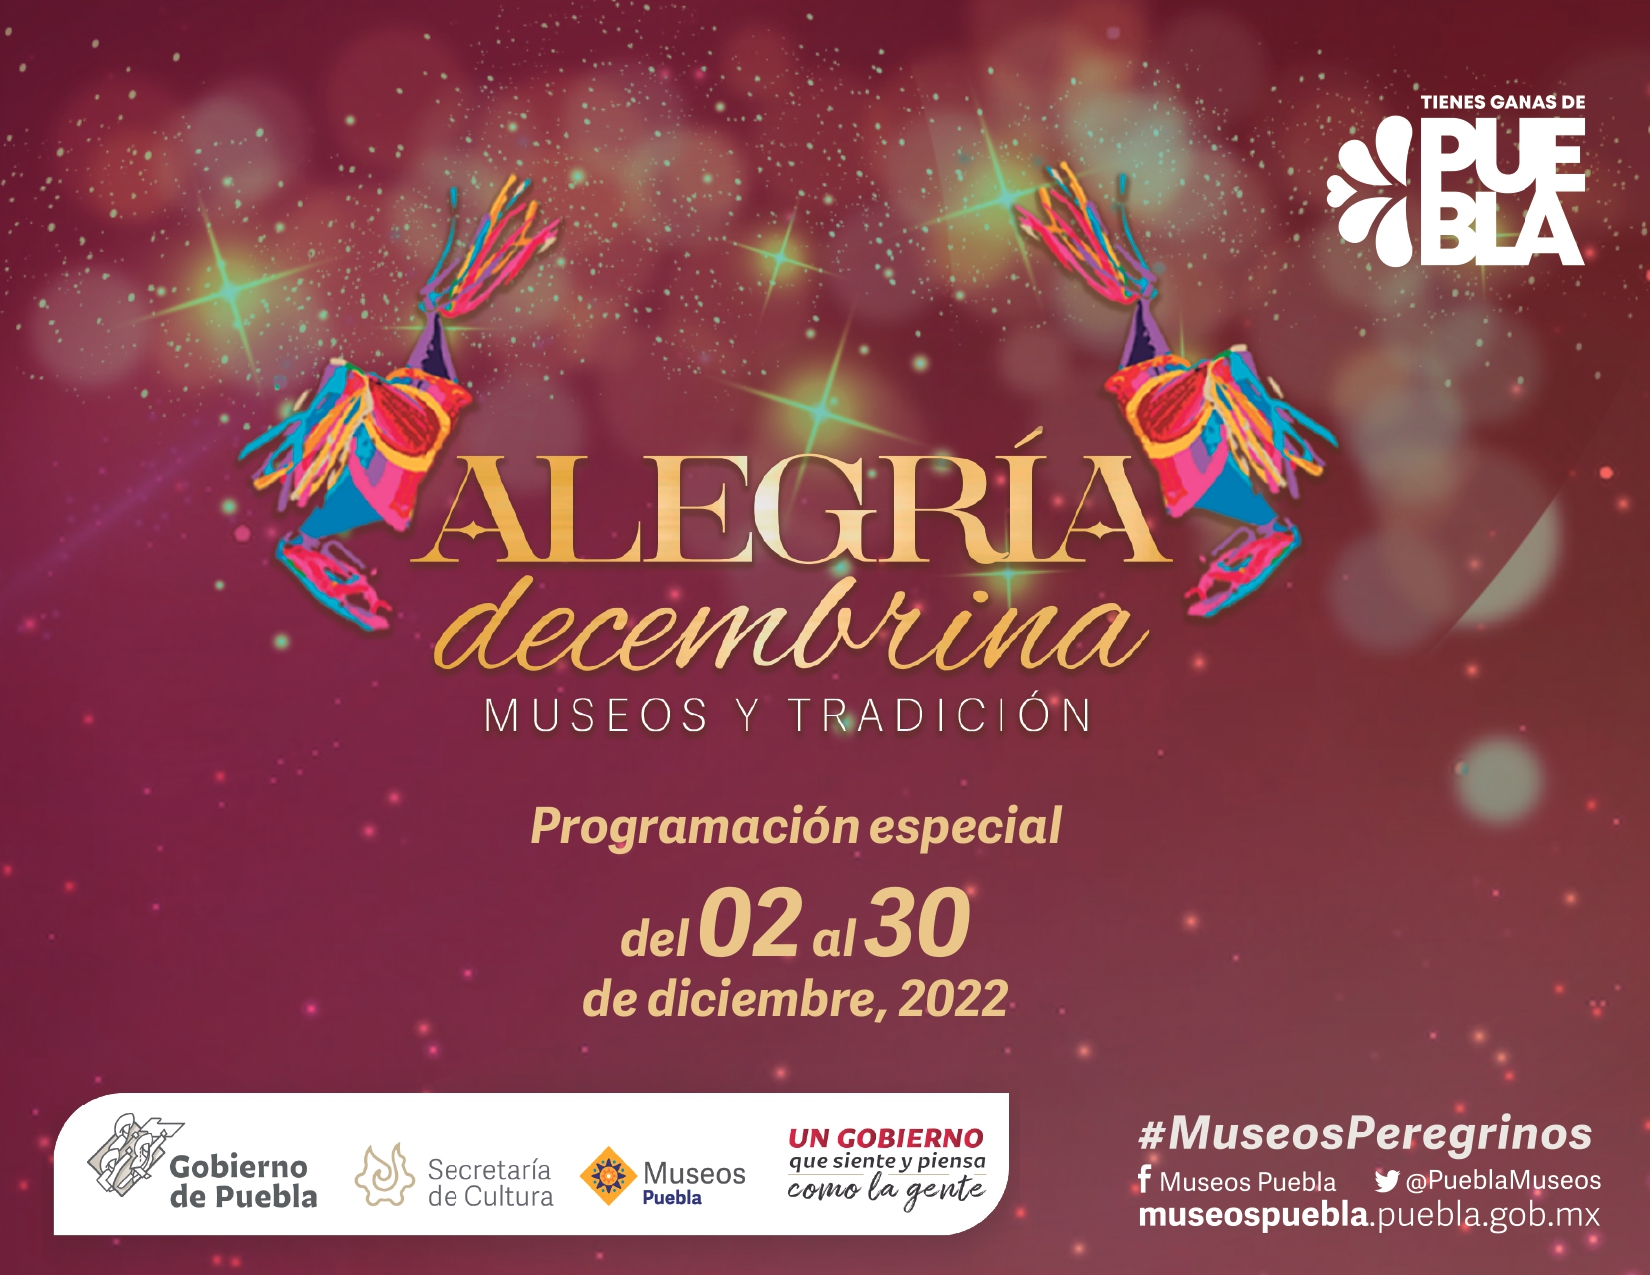 Este mes habrá actividades especiales en Museos de Puebla